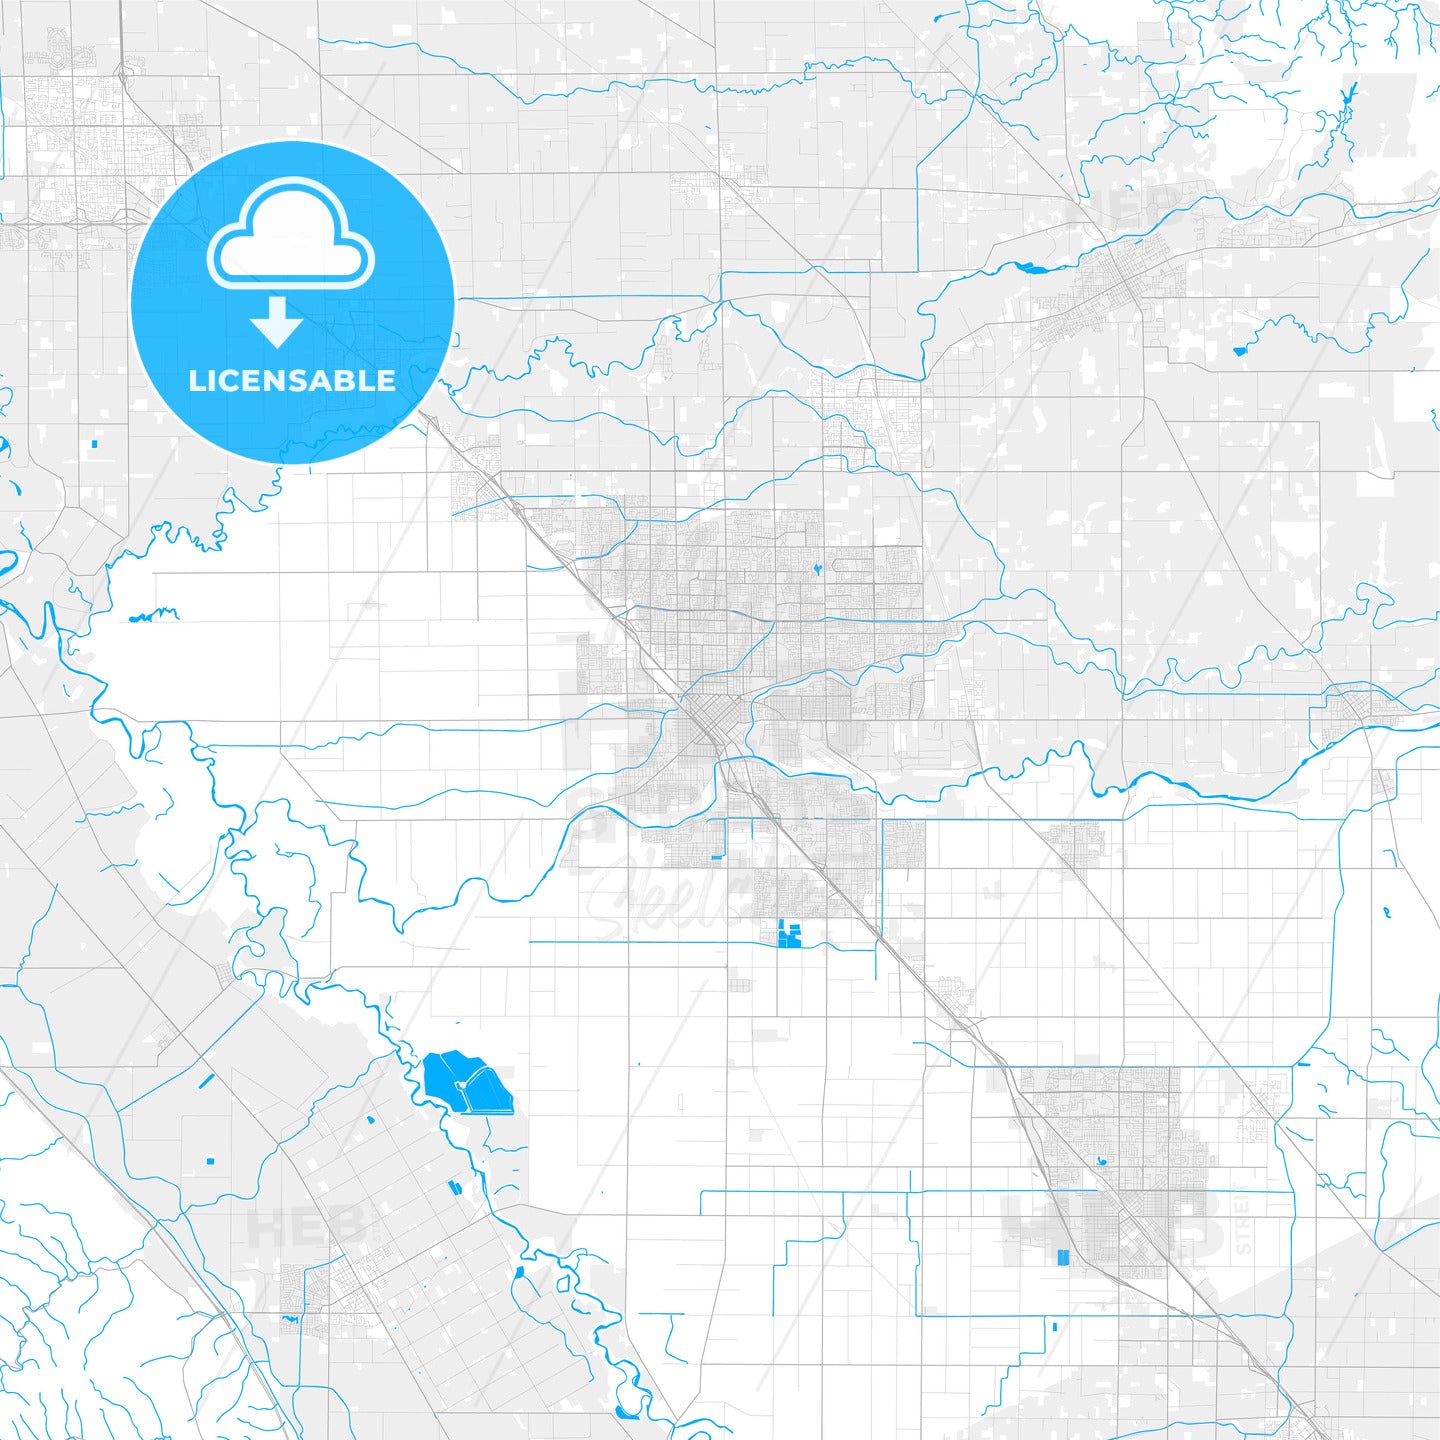 Rich detailed vector map of Modesto, California, USA